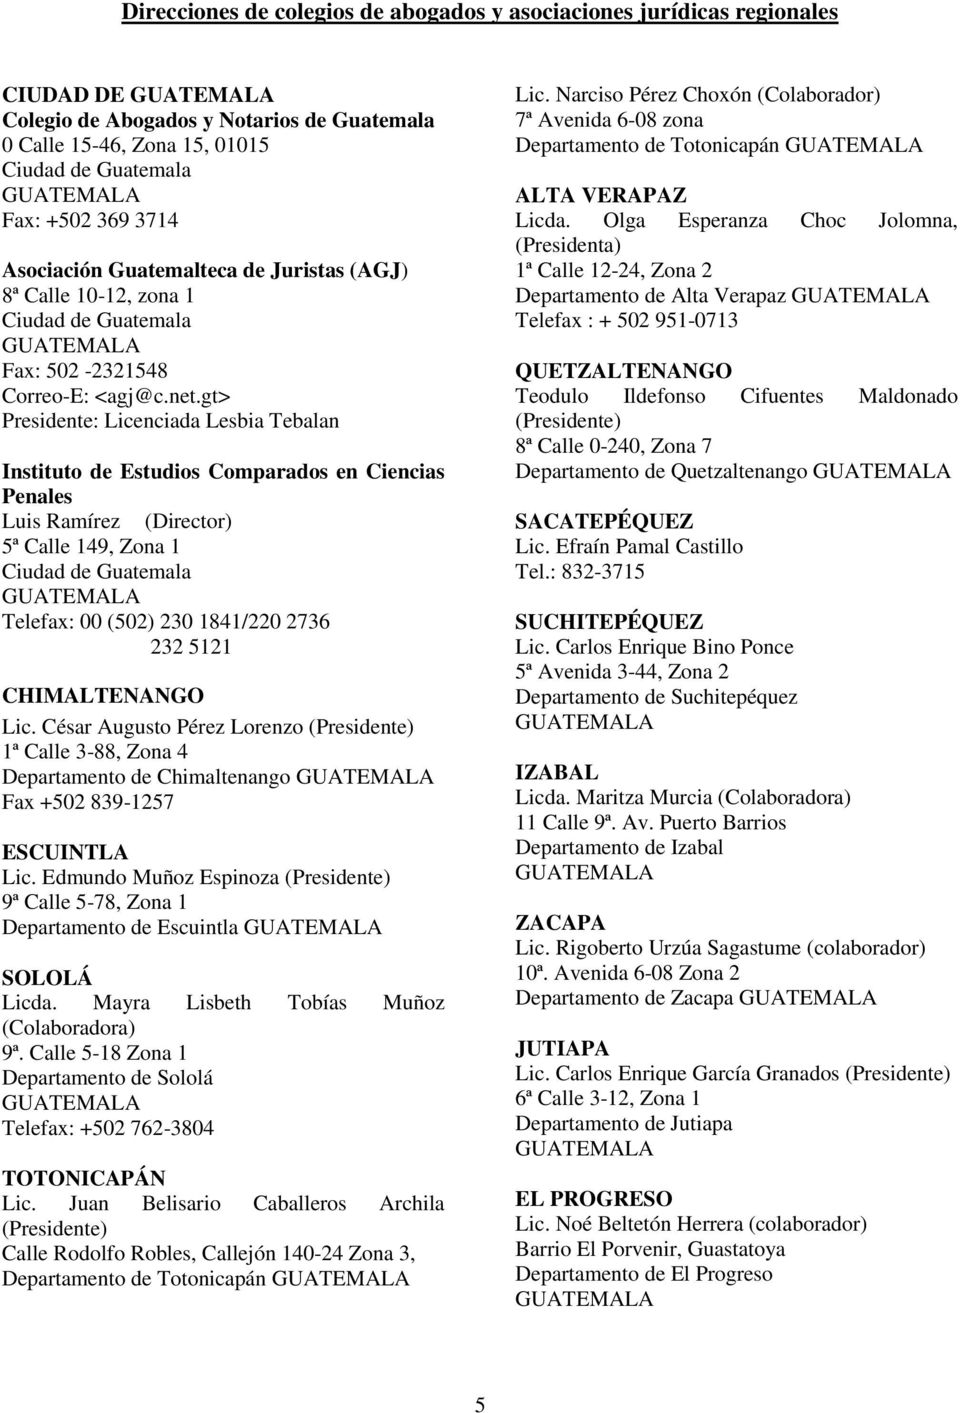 gt> Presidente: Licenciada Lesbia Tebalan Instituto de Estudios Comparados en Ciencias Penales Luis Ramírez (Director) 5ª Calle 149, Zona 1 Ciudad de Guatemala Telefax: 00 (502) 230 1841/220 2736 232